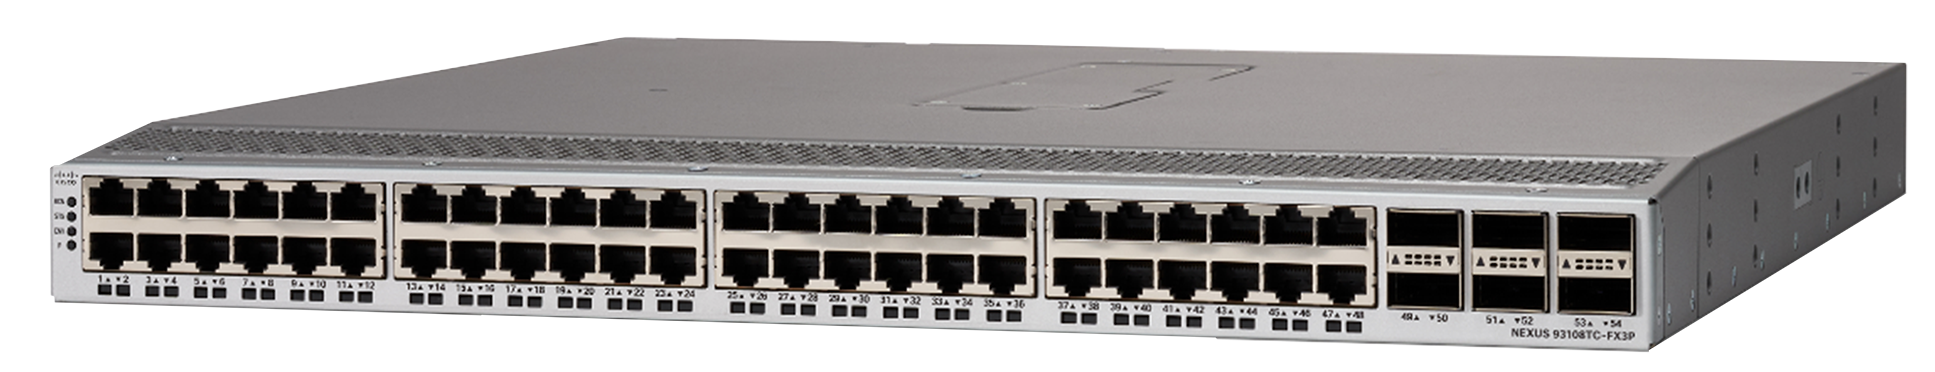 Cisco Nexus 93108TC-FX3P Switch